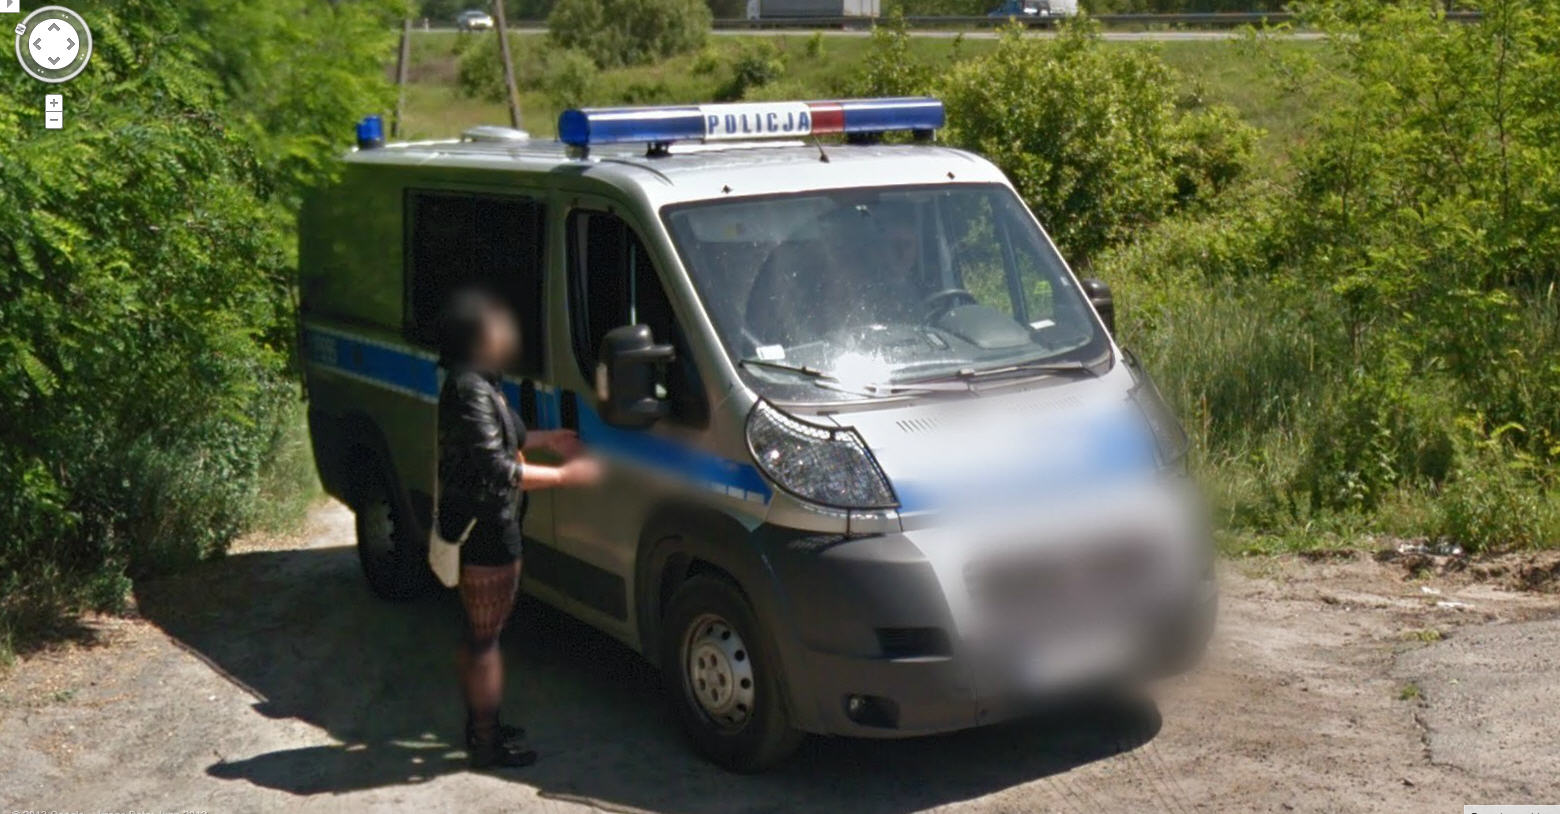 20 Dziwnych I Ciekawych Zdjec Z Google Street View Gadzetomania Pl